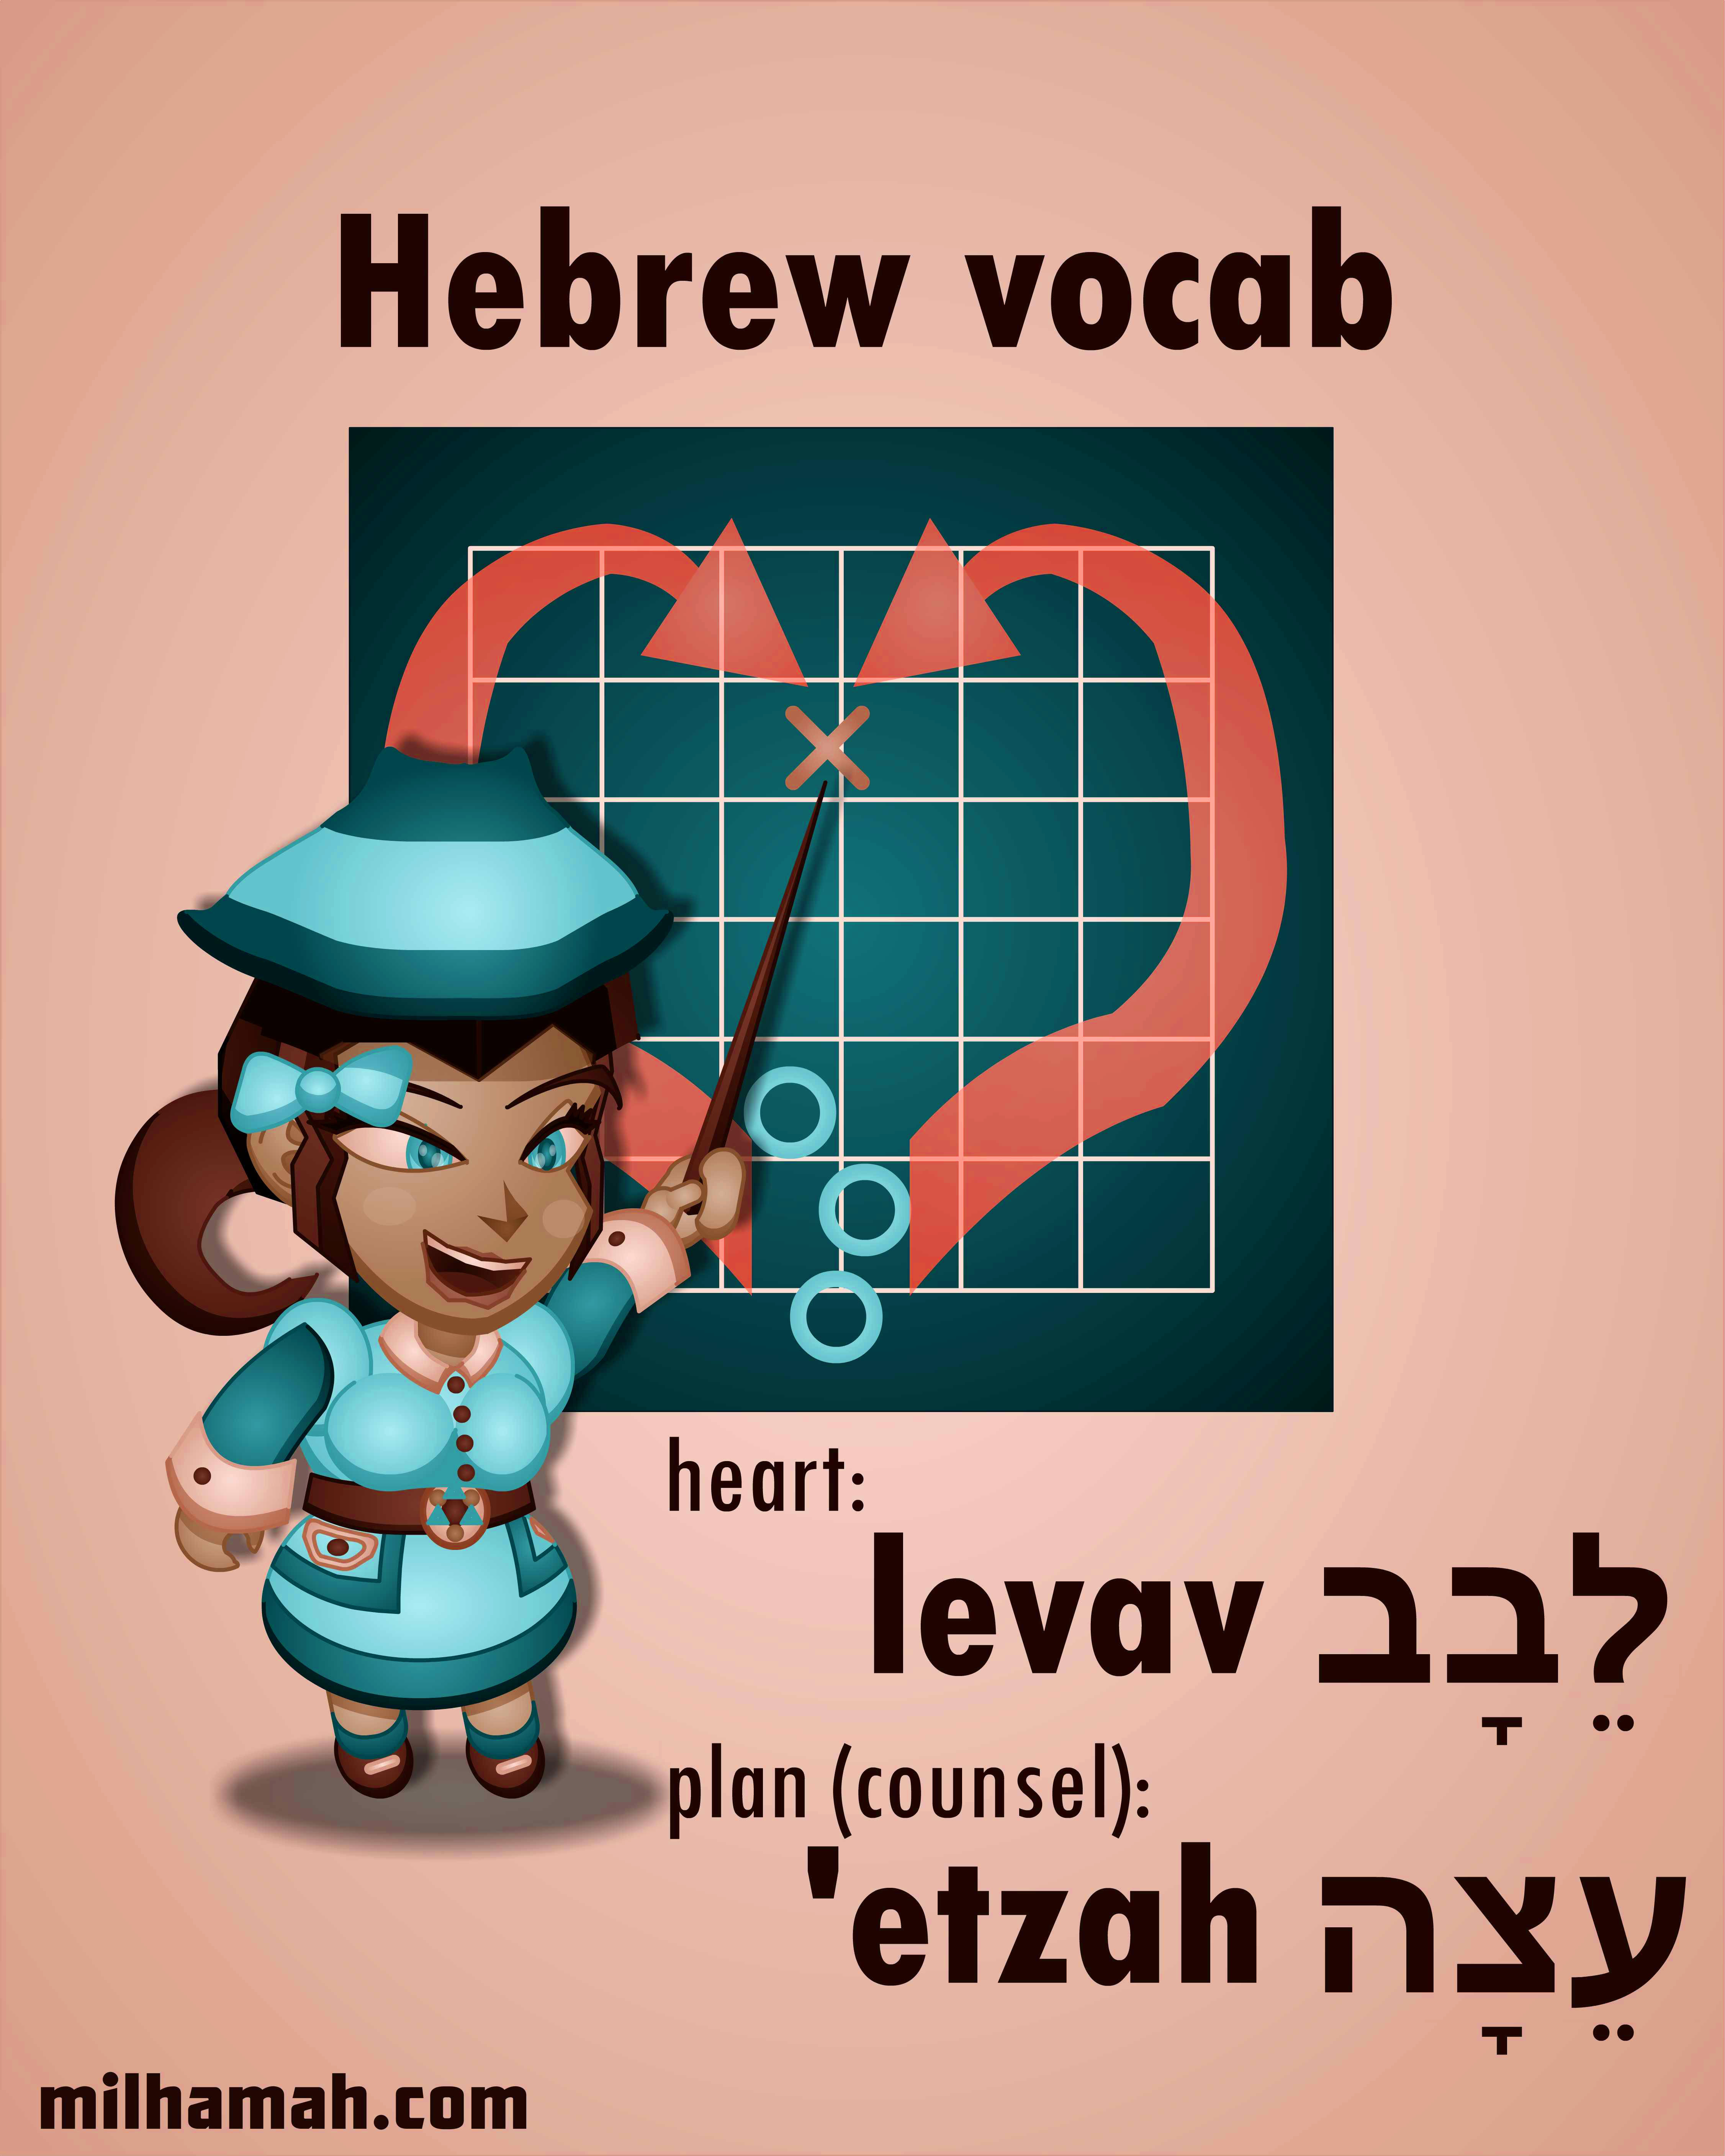 Levav is Hebrew for "heart," and 'etzah is Hebrew for "plan."